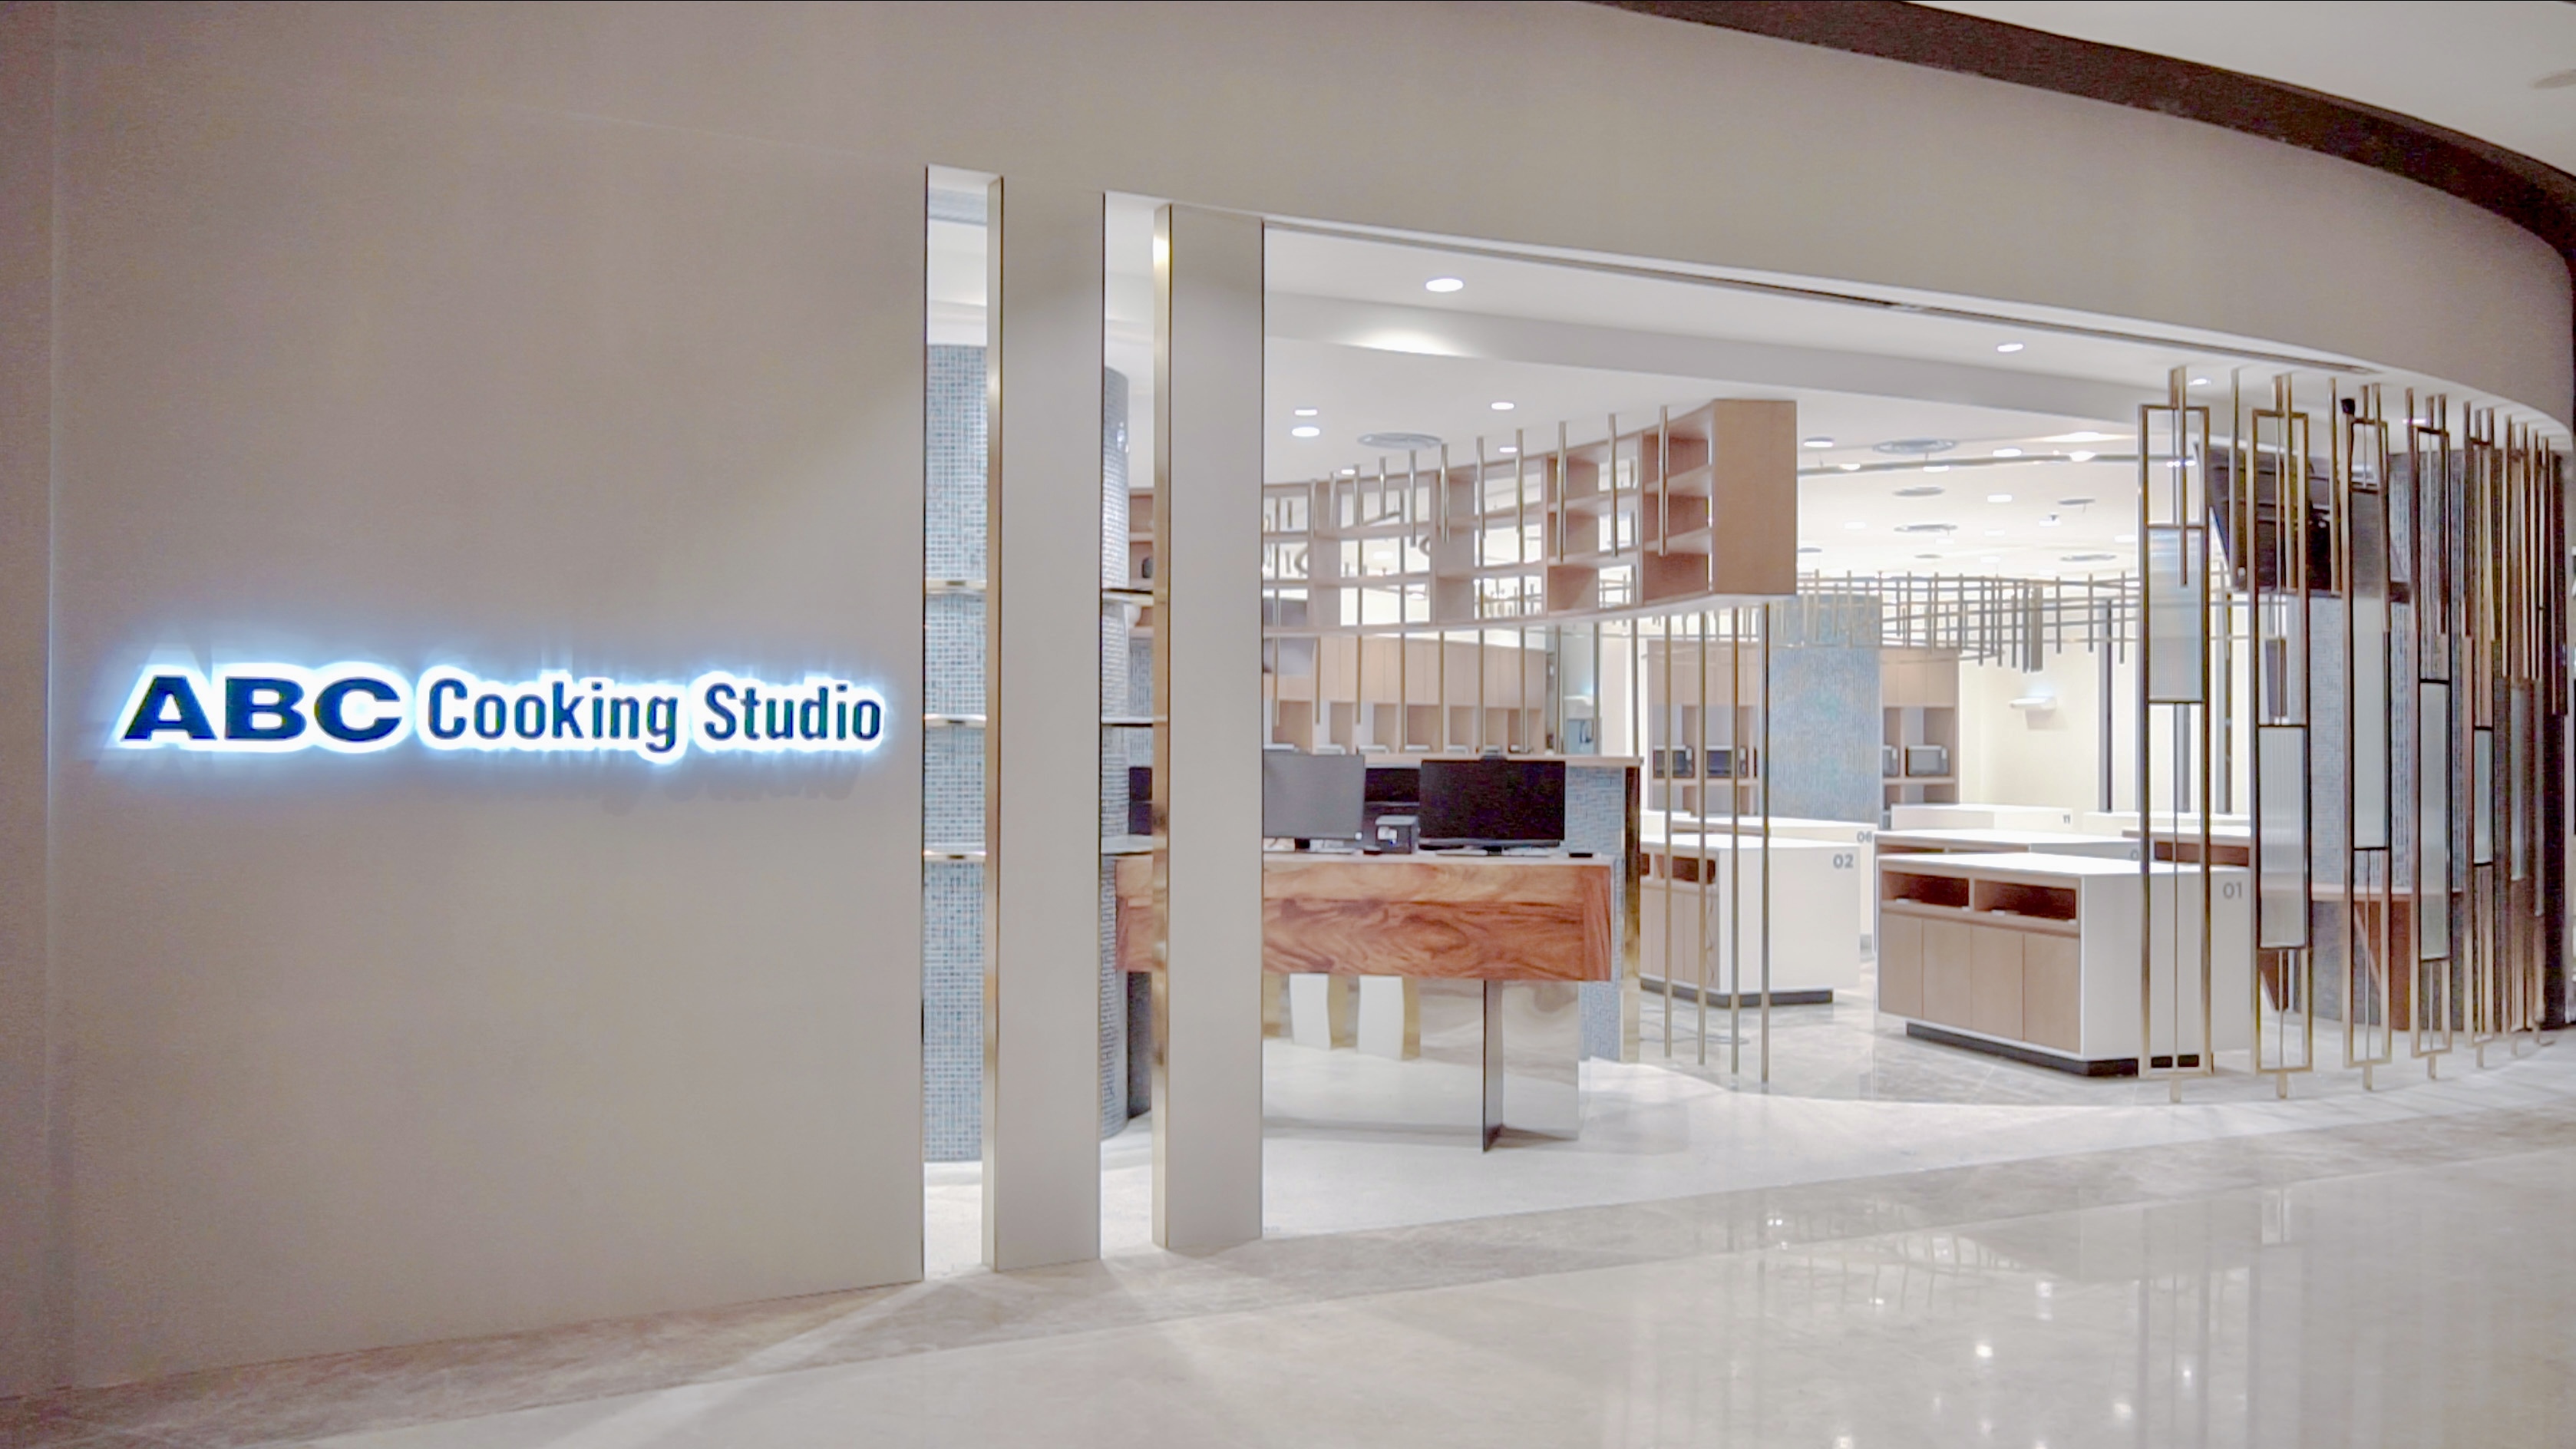 ABC Cooking Studioが
インドネシアのショッピングモールに第3店舗目を出店！
6月24日、「PIK Avenue店」がグランドオープン！ – Net24